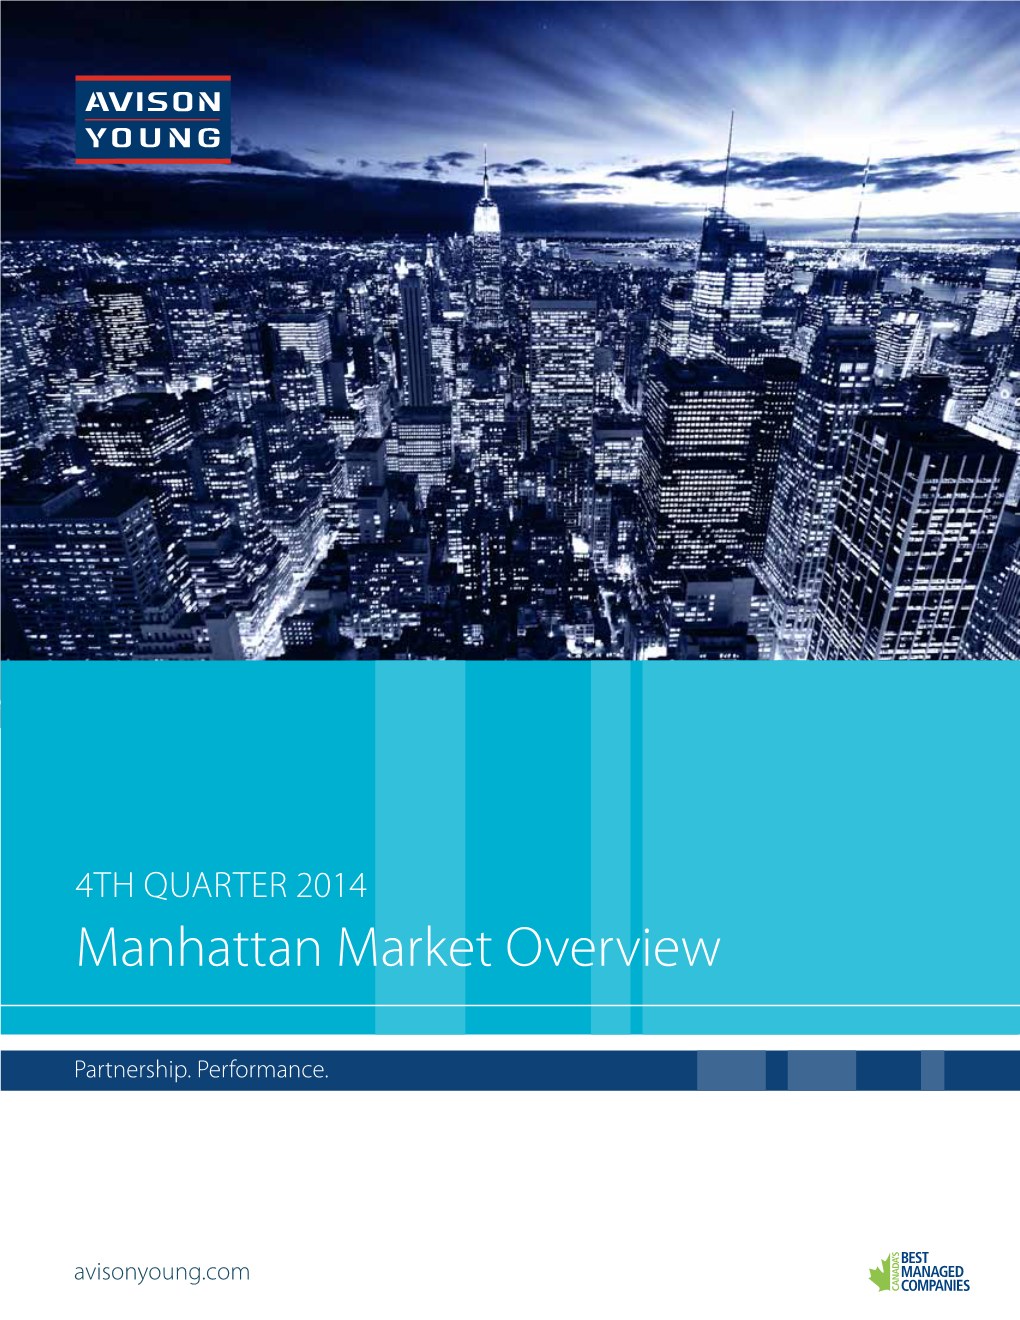 Manhattan Market Overview